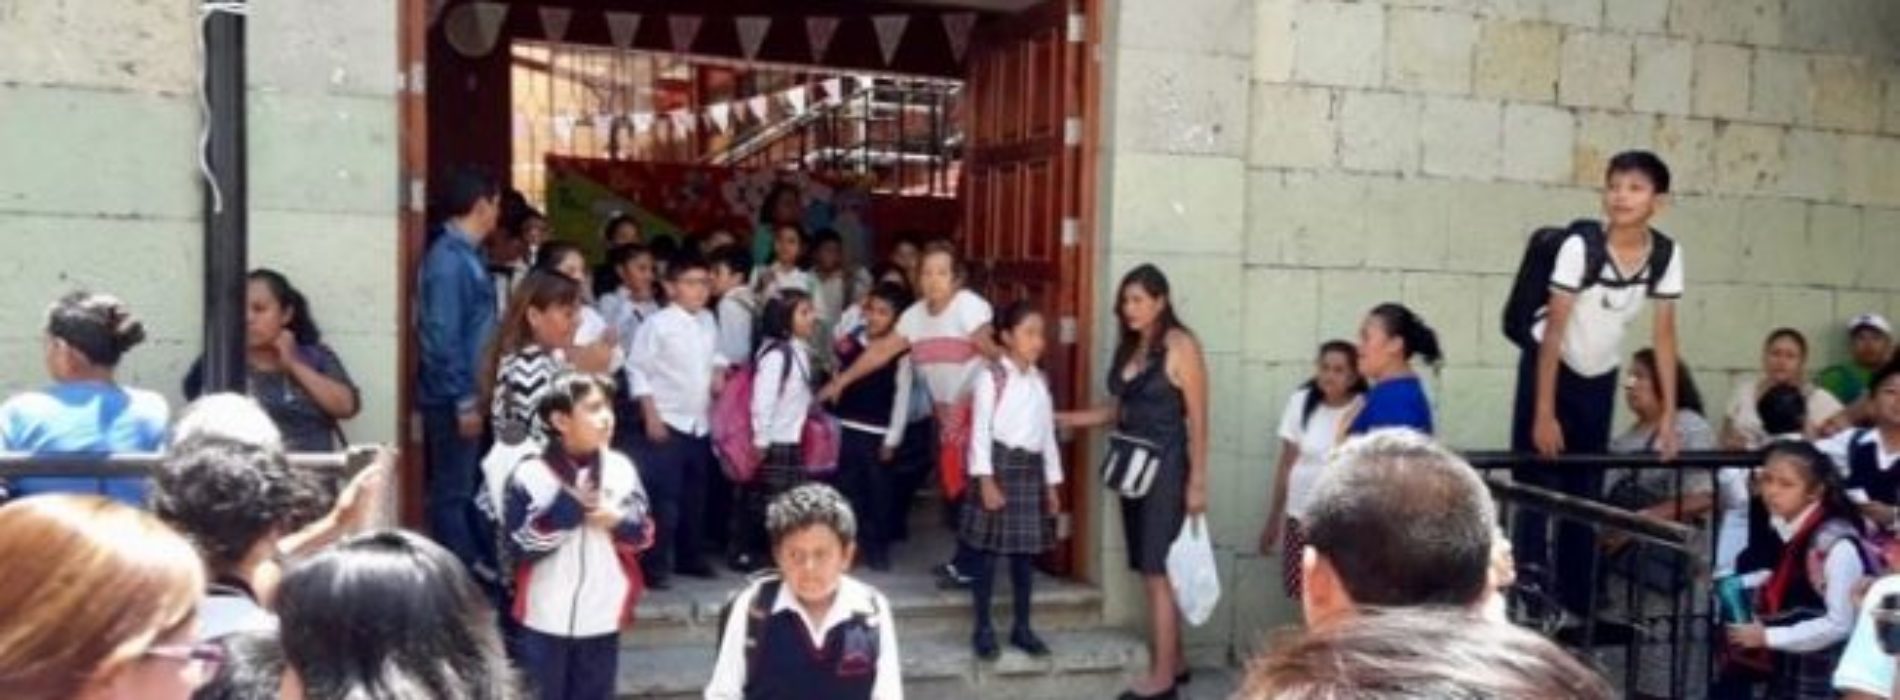 Avanzamos, maestros y gobierno, en la mejora educativa en
Oaxaca